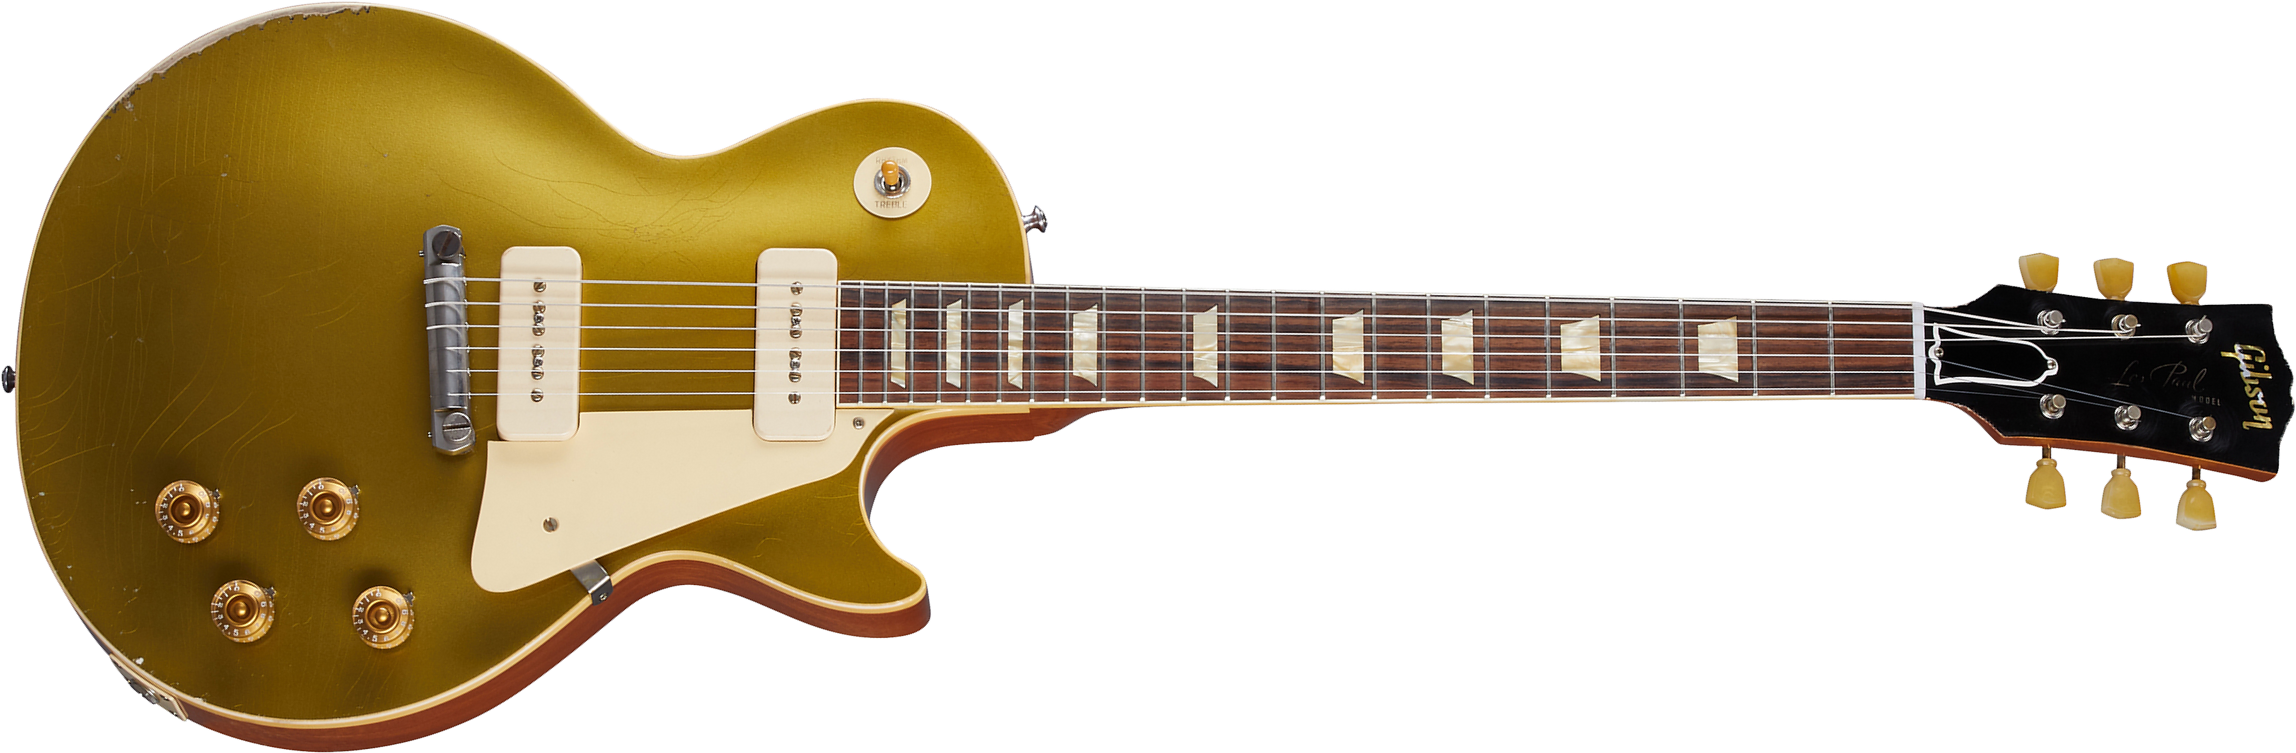 Gibson Custom Shop Murphy Lab Les Paul Goldtop 1954 Reissue 2p90 Ht Rw - Heavy Aged Double Gold - Guitarra eléctrica de corte único. - Main picture